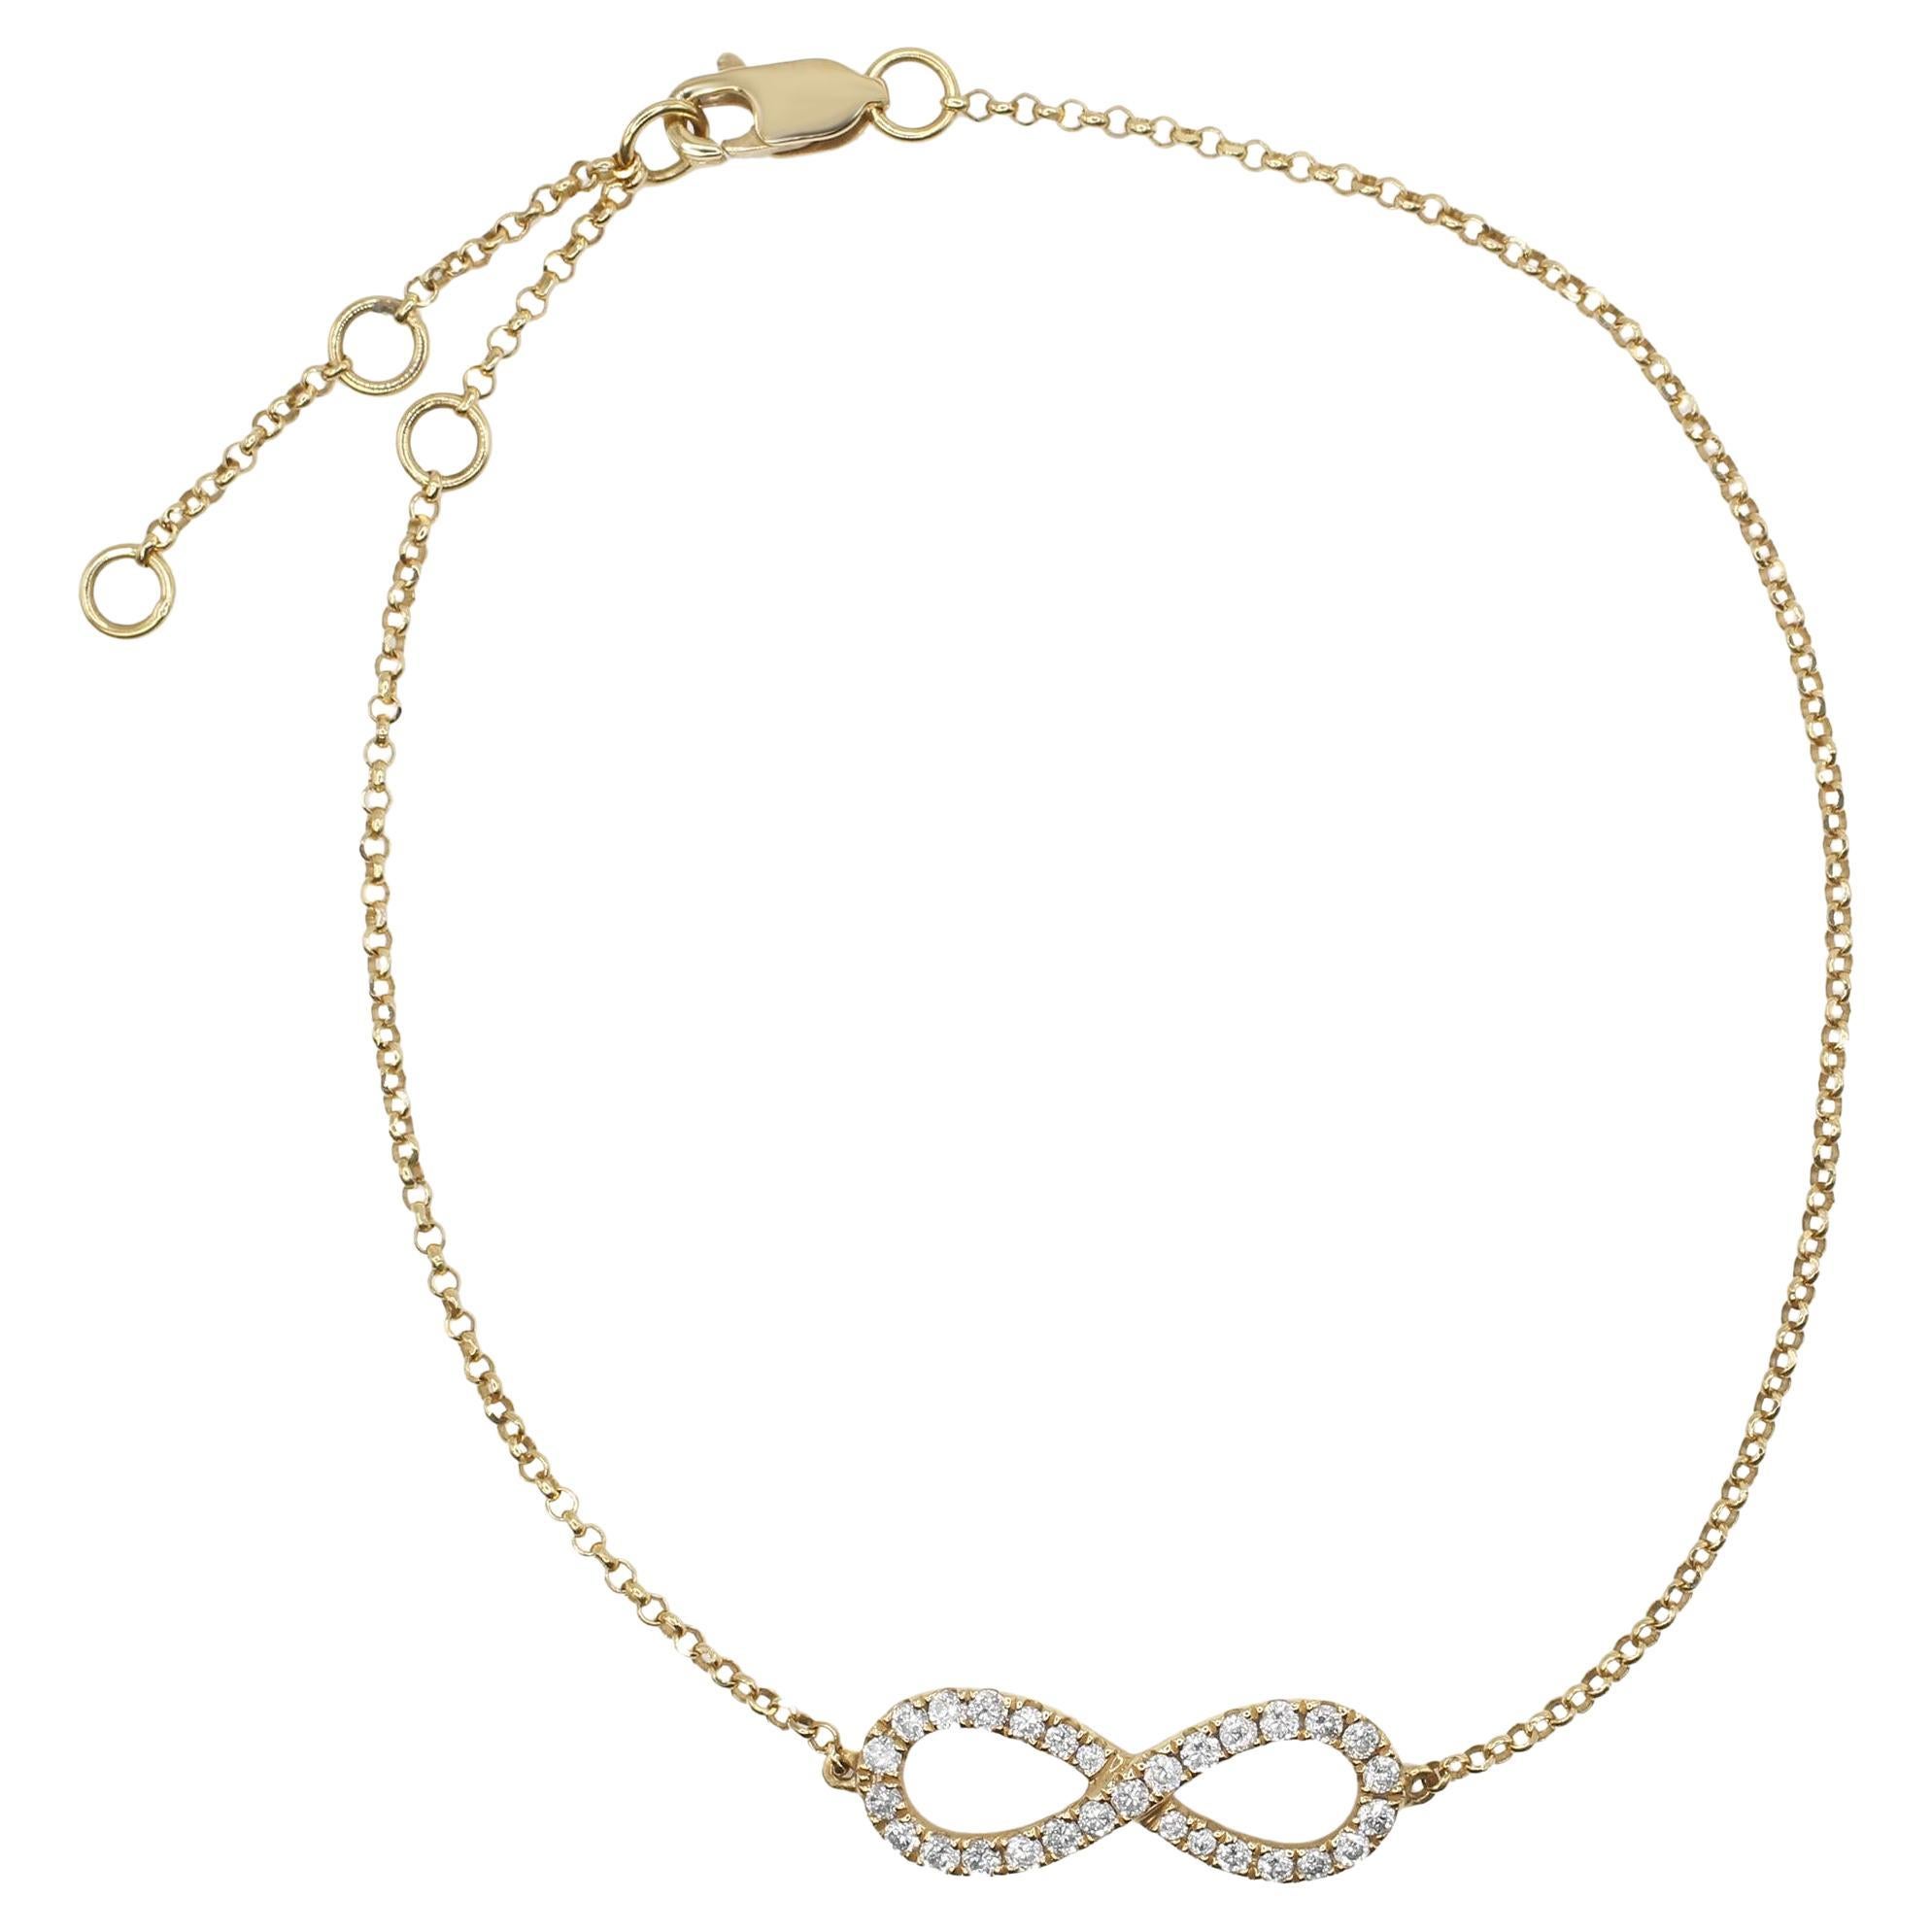 Rachel Koen Diamond Infinity Ladies Bracelet 18K Yellow Gold 0.25cttw